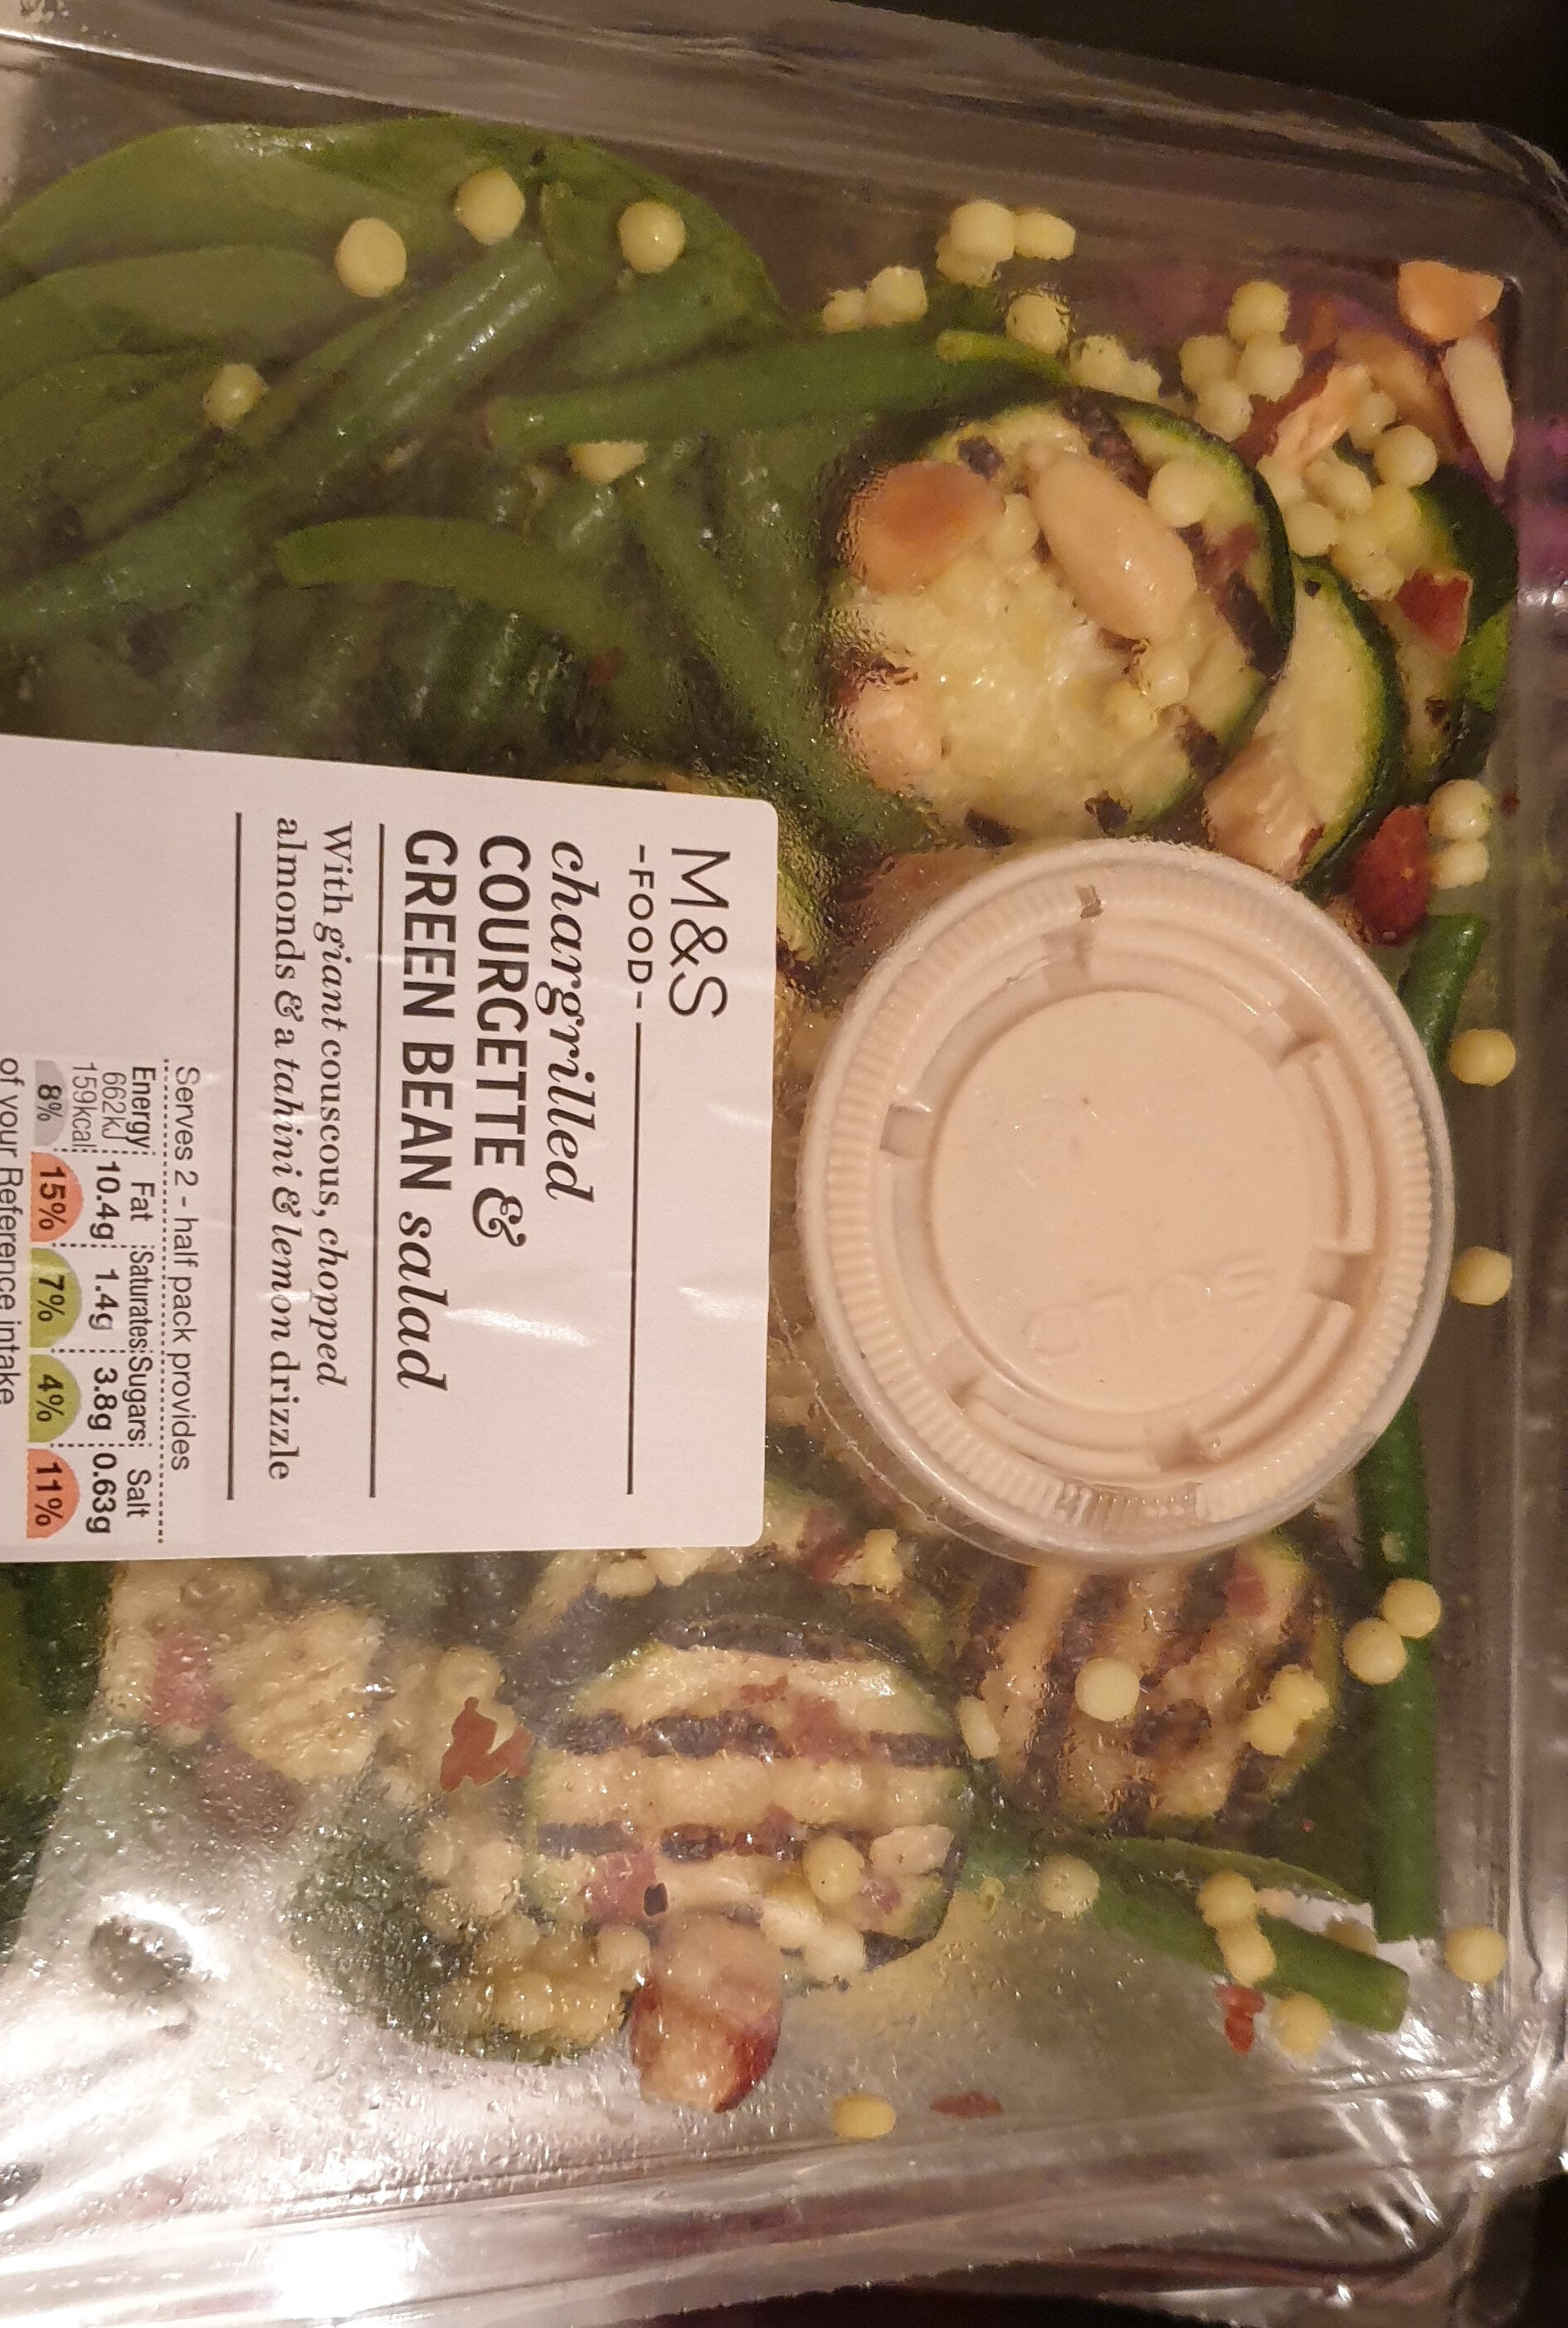 shargrill courgette & green bean salad - Produit - en